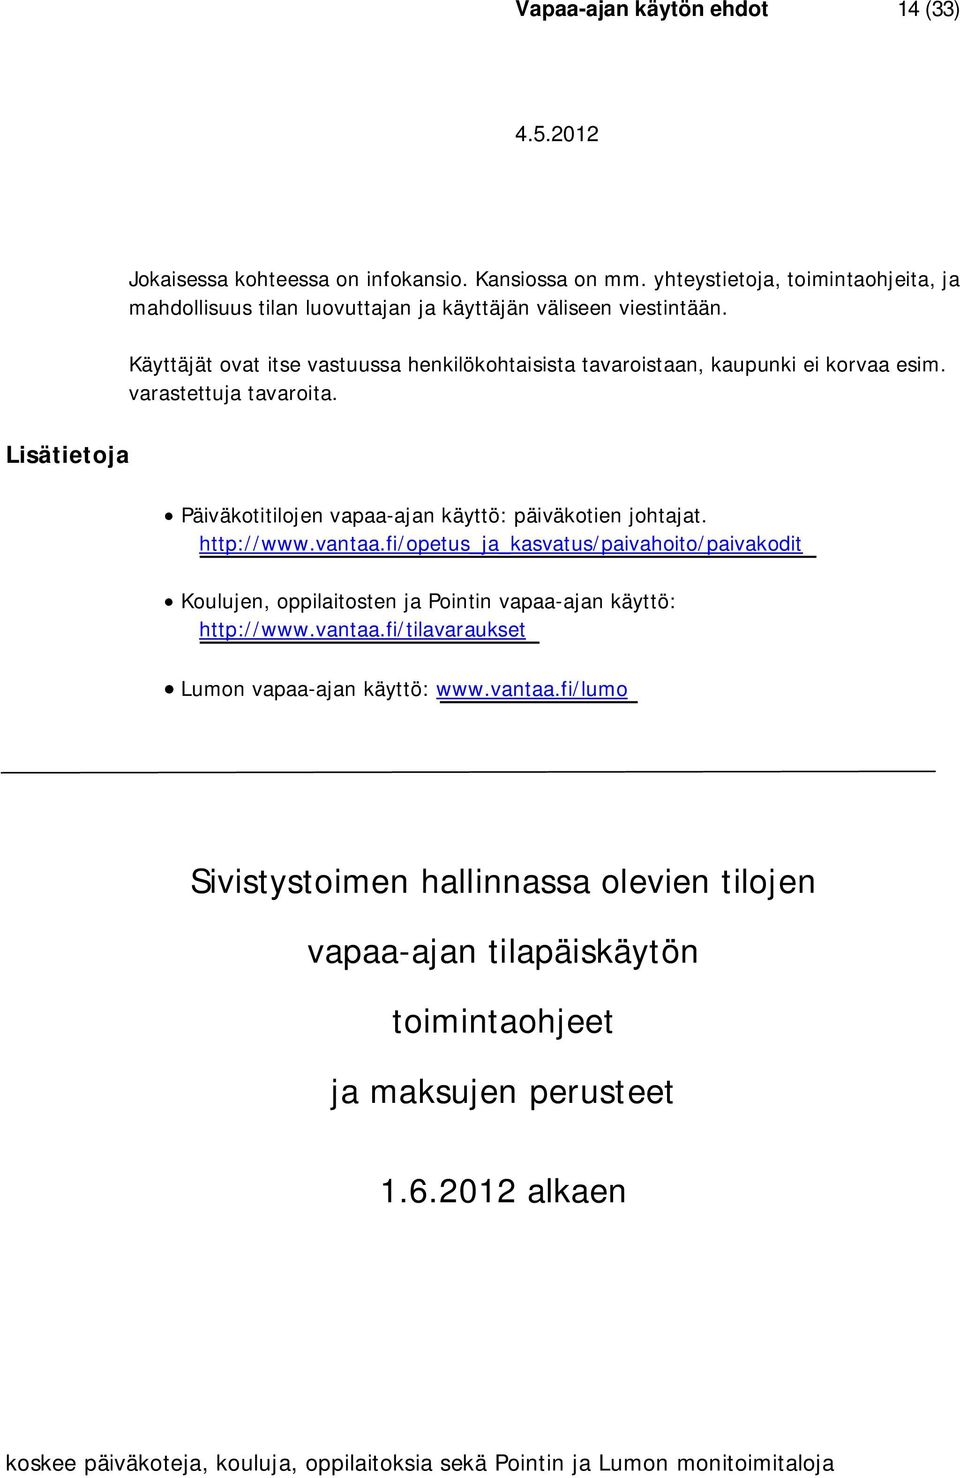 http://www.vantaa.fi/opetus_ja_kasvatus/paivahoito/paivakodit Koulujen, oppilaitosten ja Pointin vapaa-ajan käyttö: http://www.vantaa.fi/tilavaraukset Lumon vapaa-ajan käyttö: www.vantaa.fi/lumo Sivistystoimen hallinnassa olevien tilojen vapaa-ajan tilapäiskäytön toimintaohjeet ja maksujen perusteet 1.